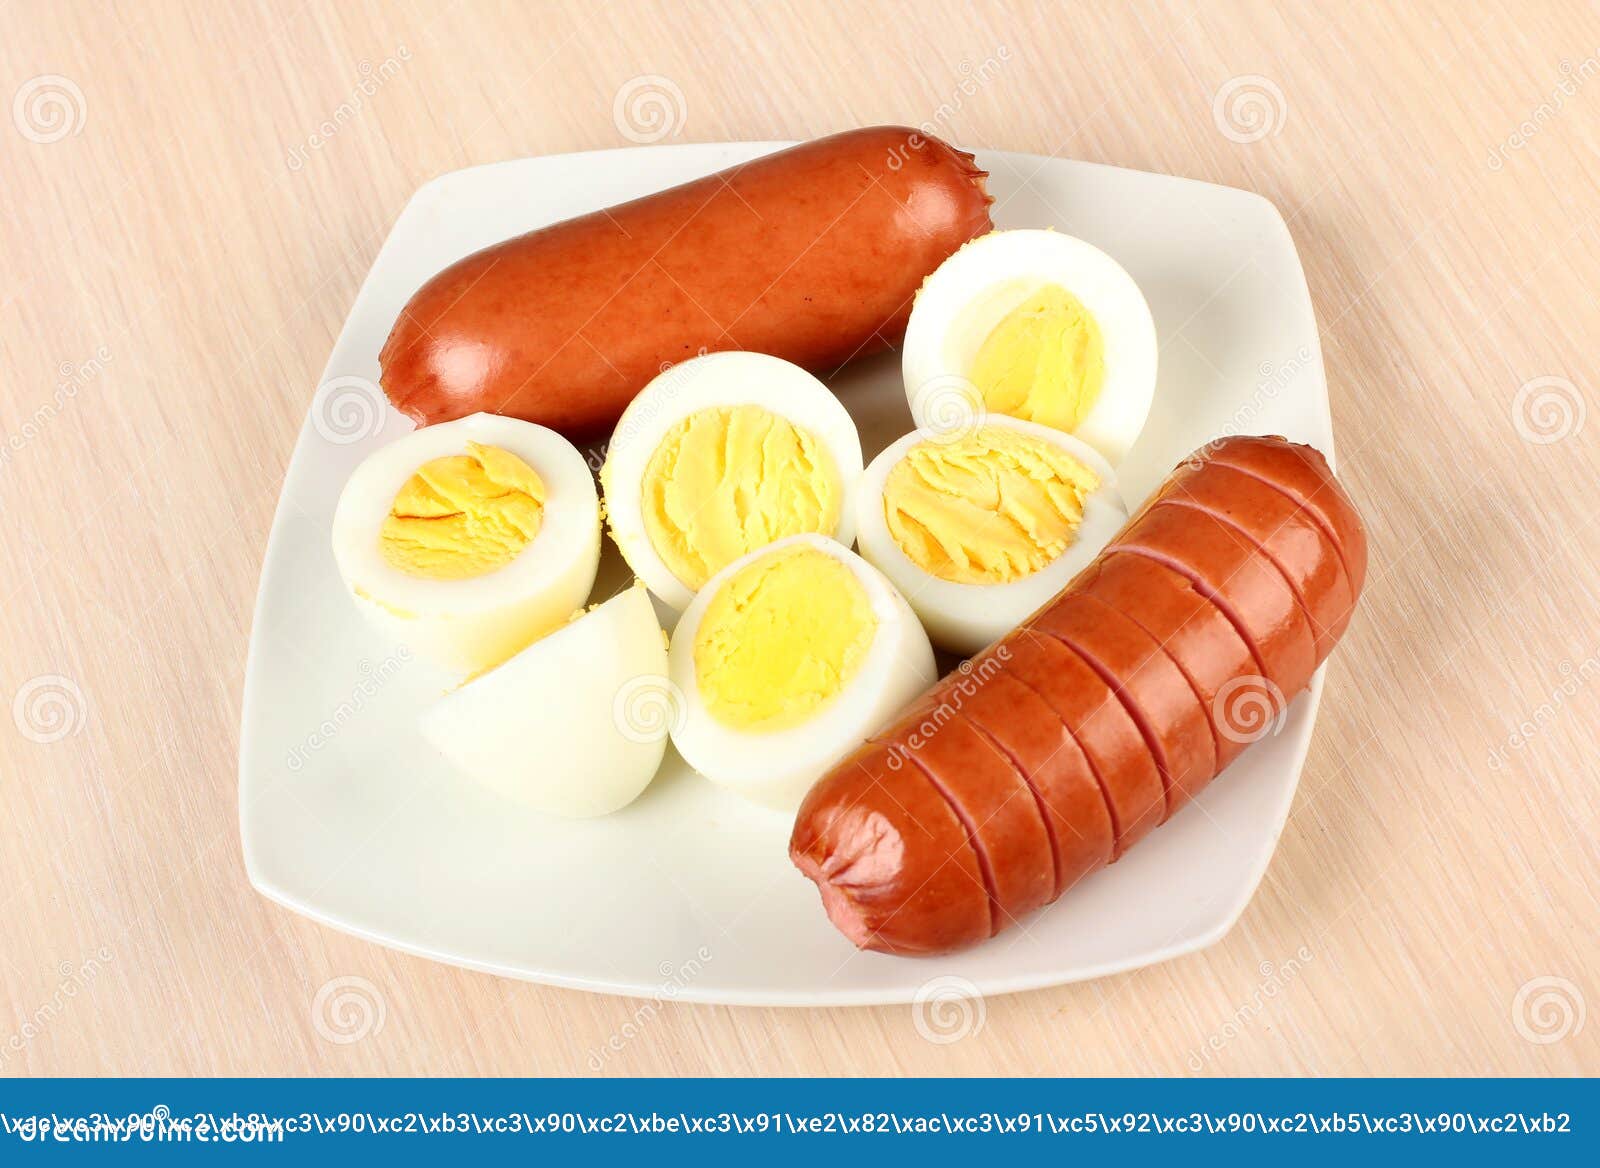 Два яйца и колбаса. Сосиска с яйцом. Вареные яйца с сосисками. Яичница с сосисками. Яйцо с колбасой.